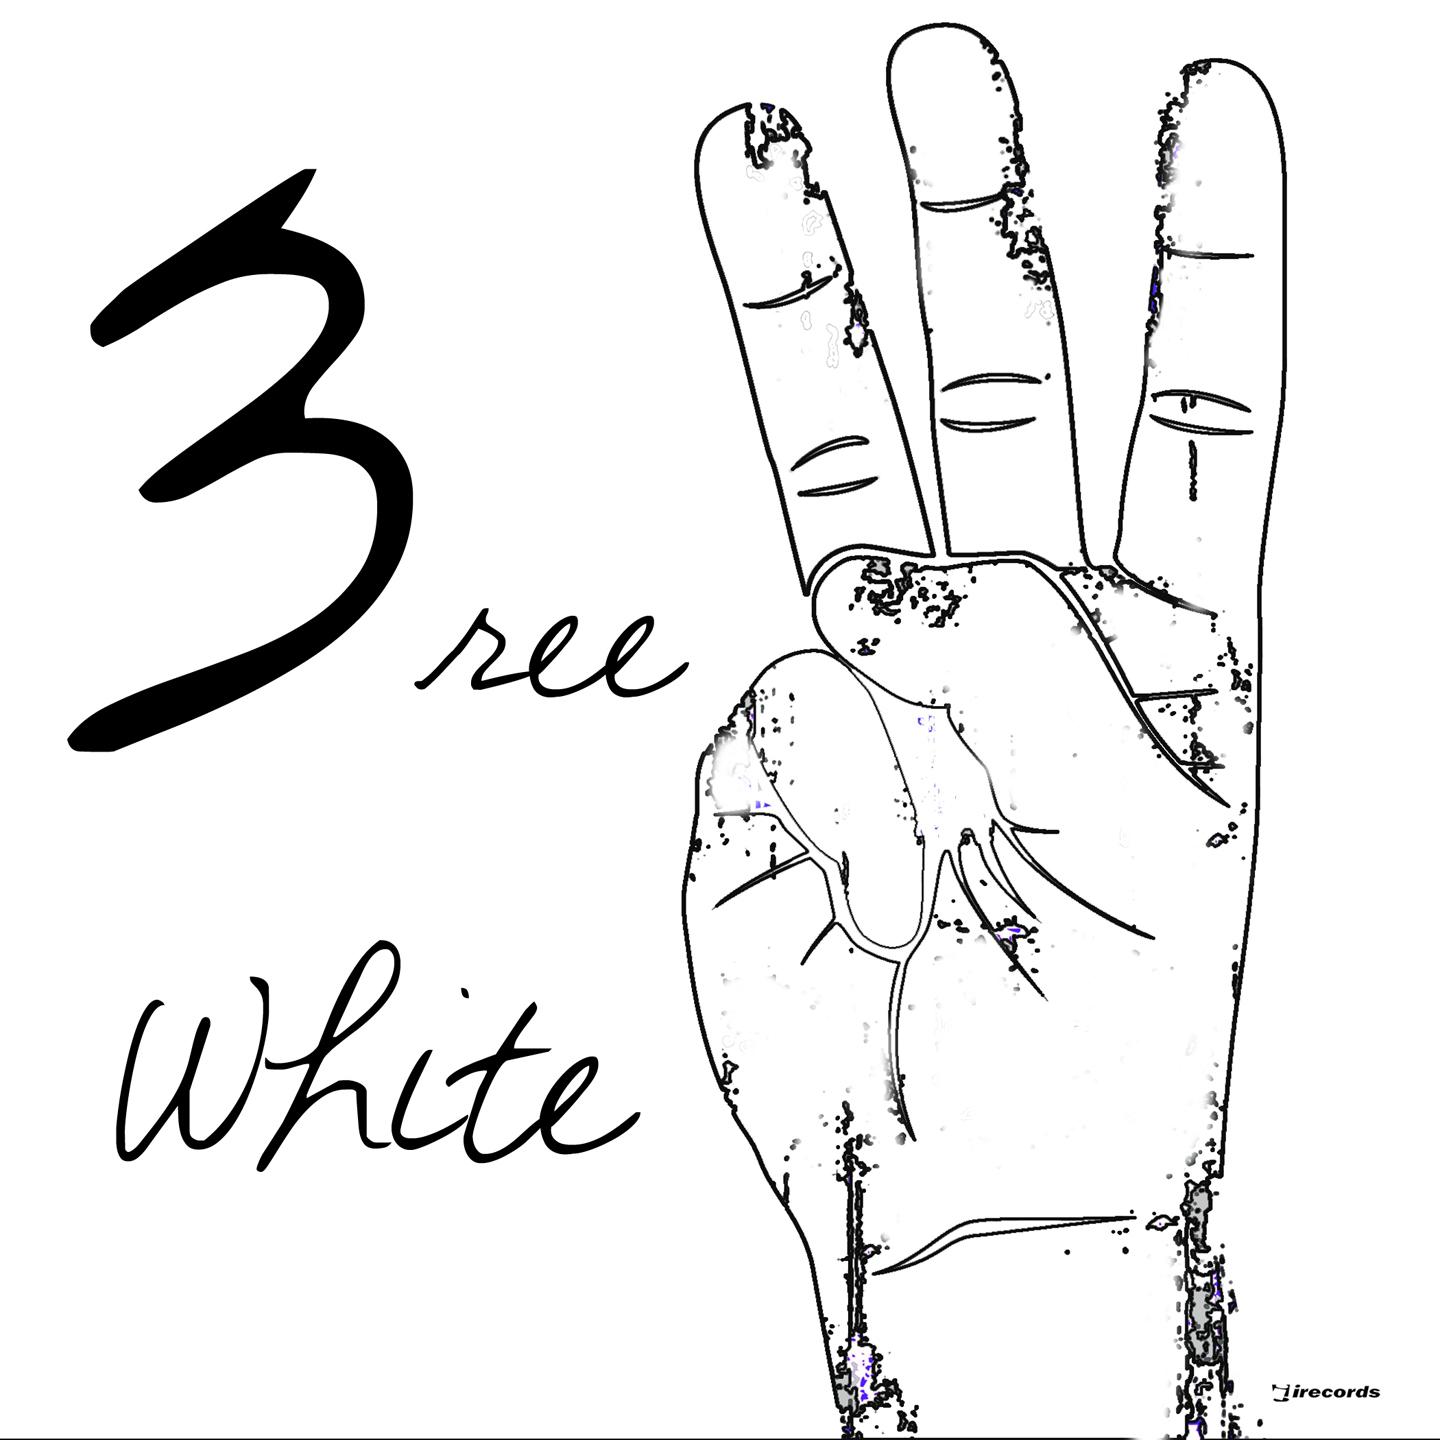 3ree (White)